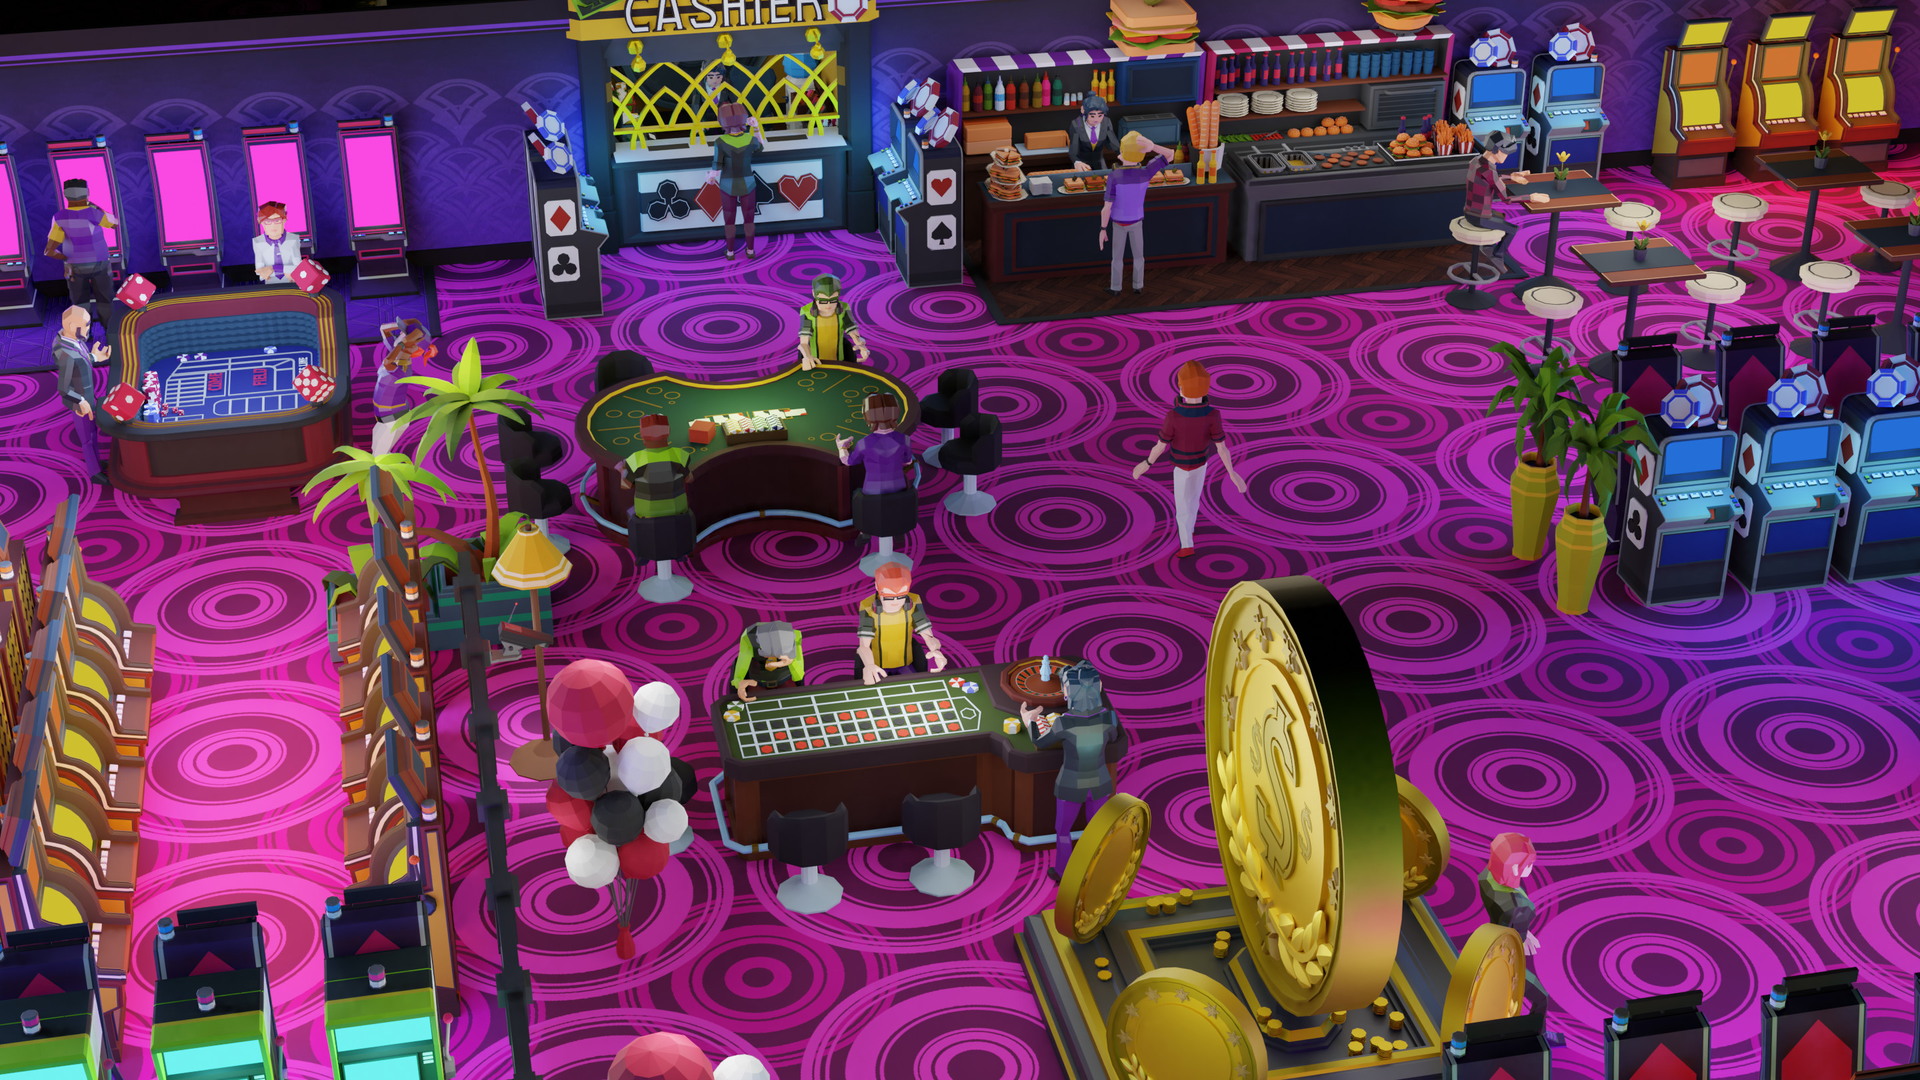 Grand Casino Tycoon - screenshot 3